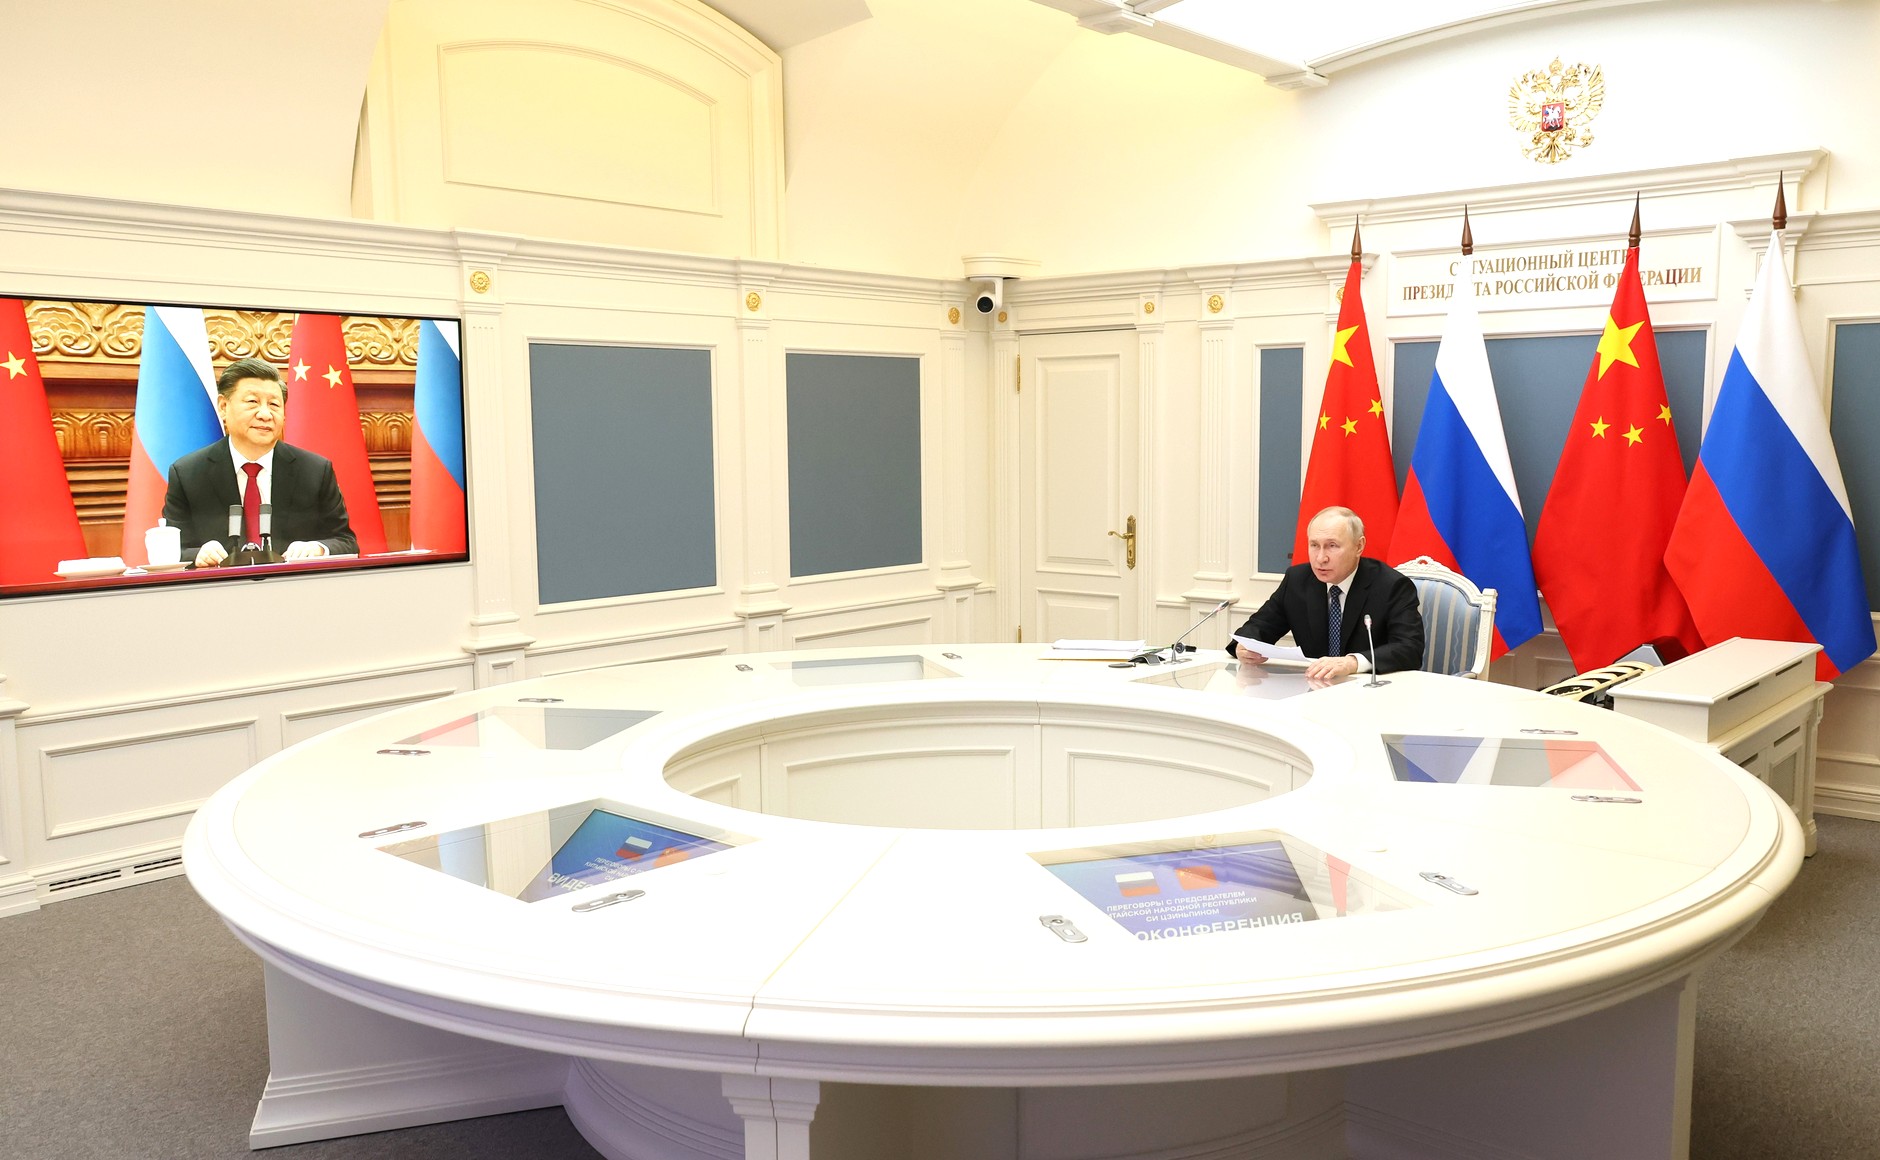 Putin habla con Xi y envía mensaje de Año Nuevo [videos]